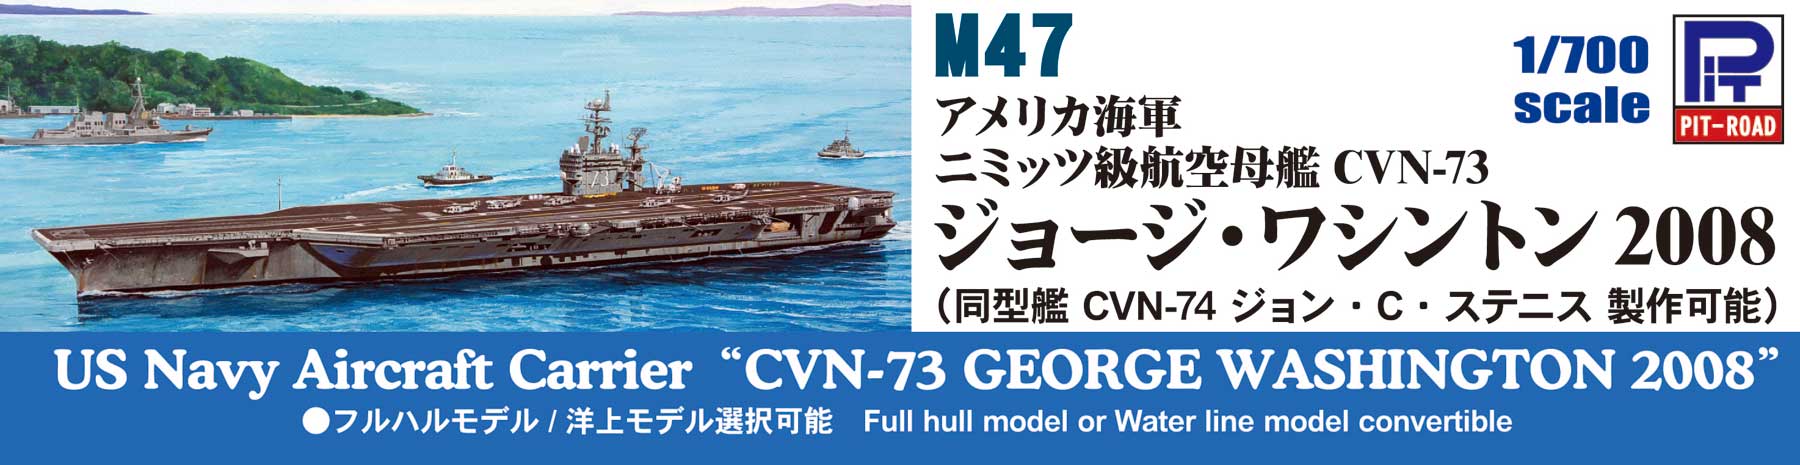 1/700 アメリカ海軍 ニミッツ級 航空母艦 CVN-73 ジョージ・ワシントン